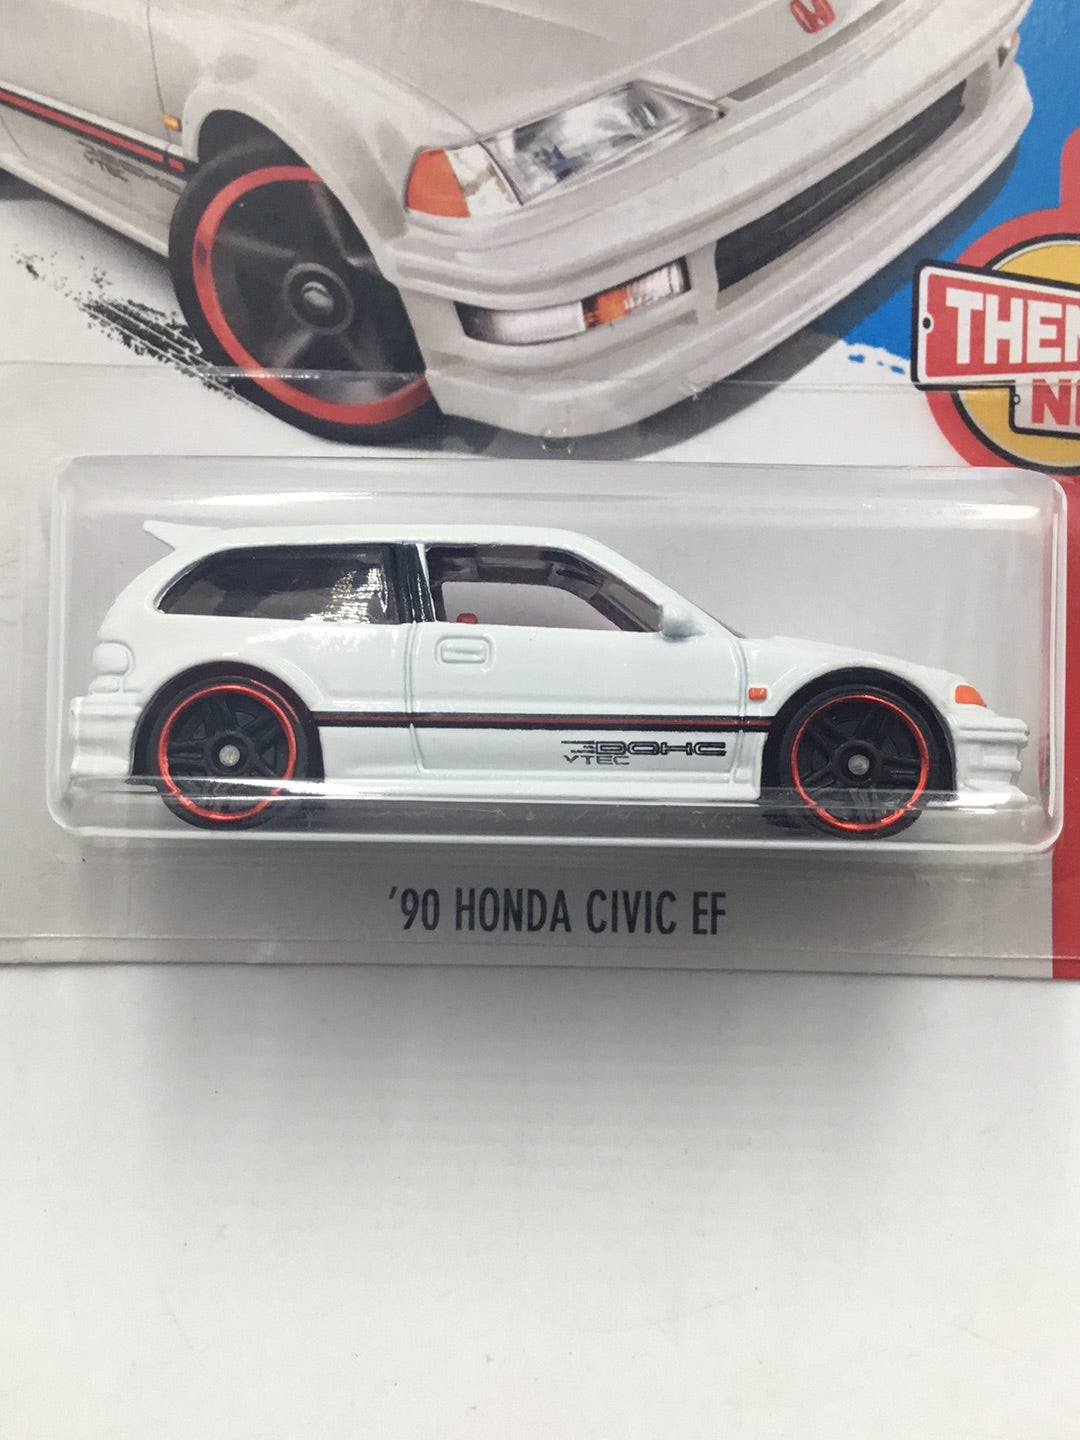 2017 hot wheels #330 90 Honda Civic EF white  CC4